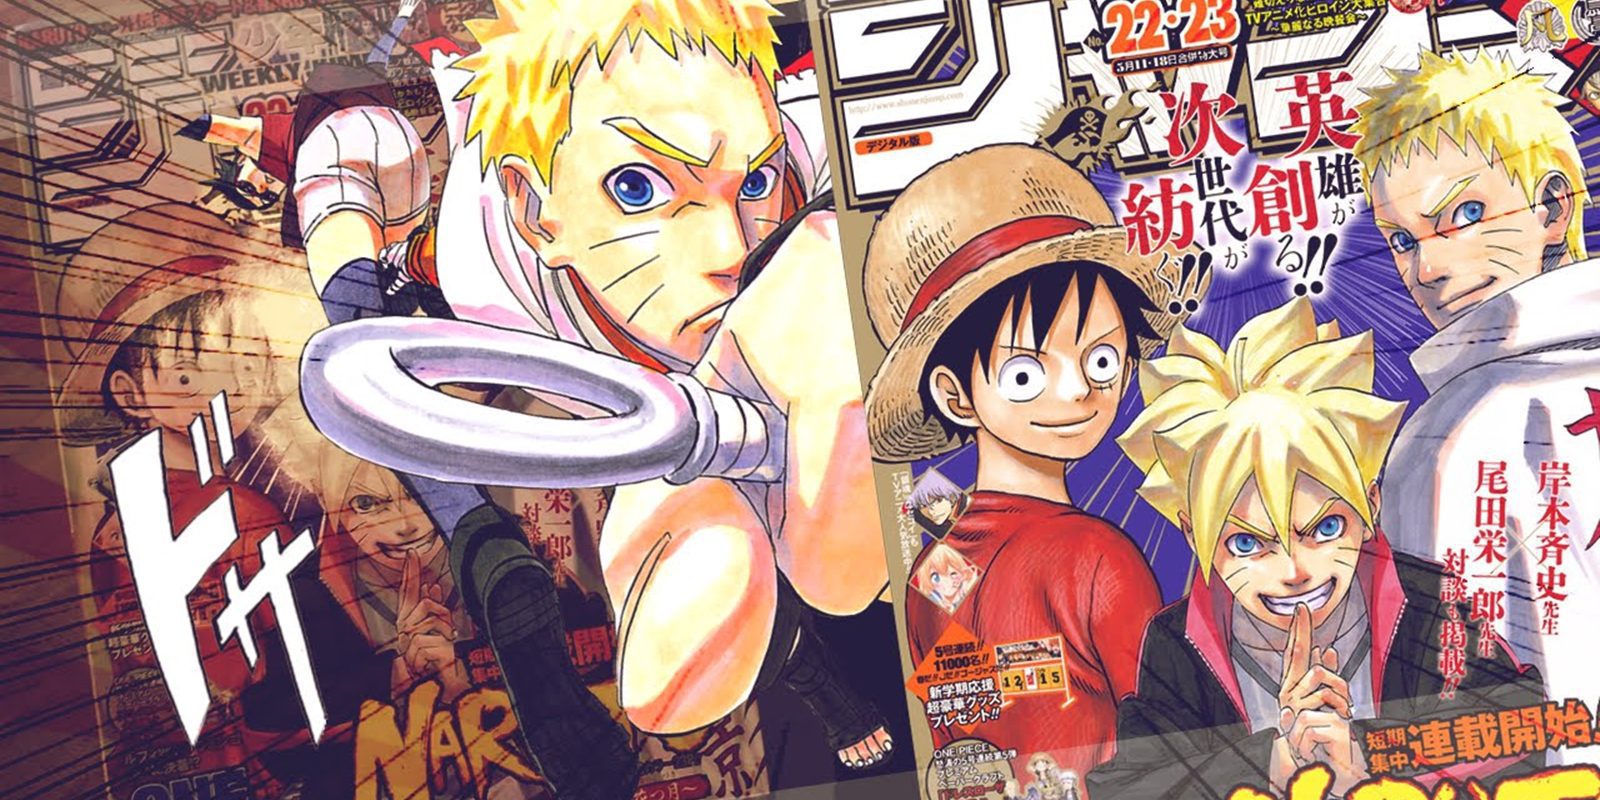 Llegan tres nuevas series a la Weekly Shonen Jump de Shueisha